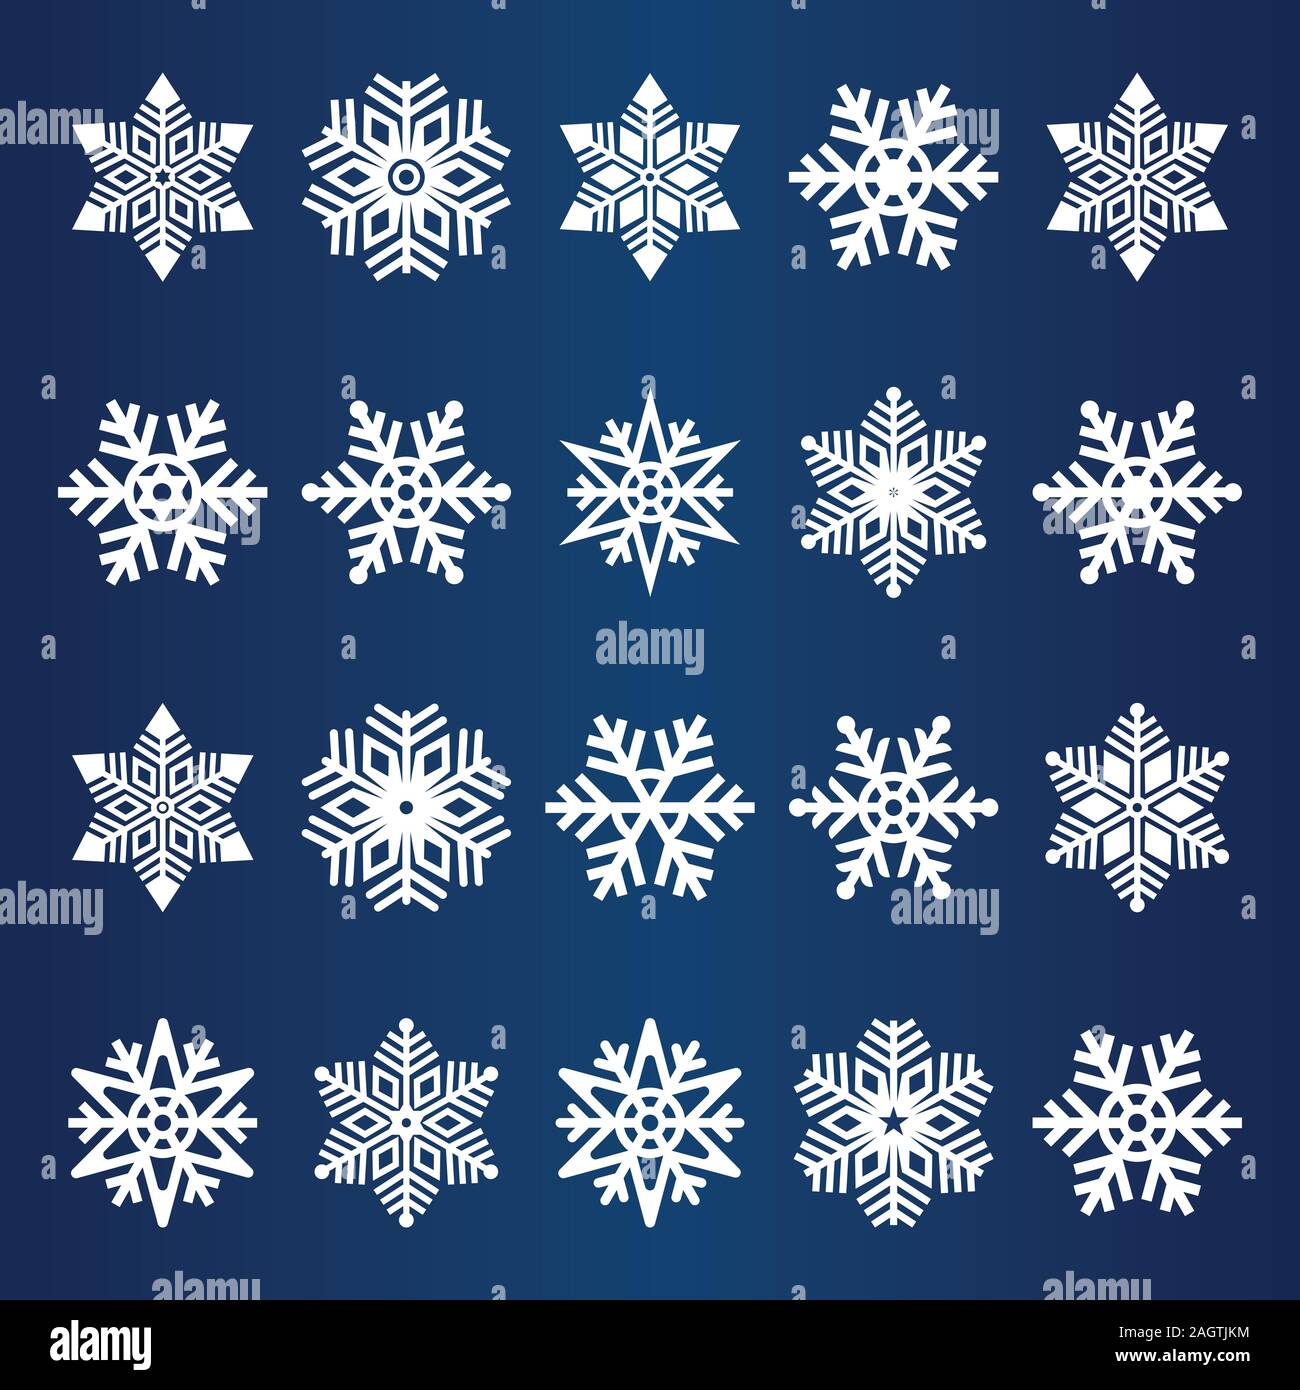 Inverno Collezione Snowflake icona Disegno vettoriale, vacanze inverno insieme di fiocco di neve Logo Design. Il simbolo del fiocco di neve bianca Vector Bundle con sfondo blu. Illustrazione Vettoriale